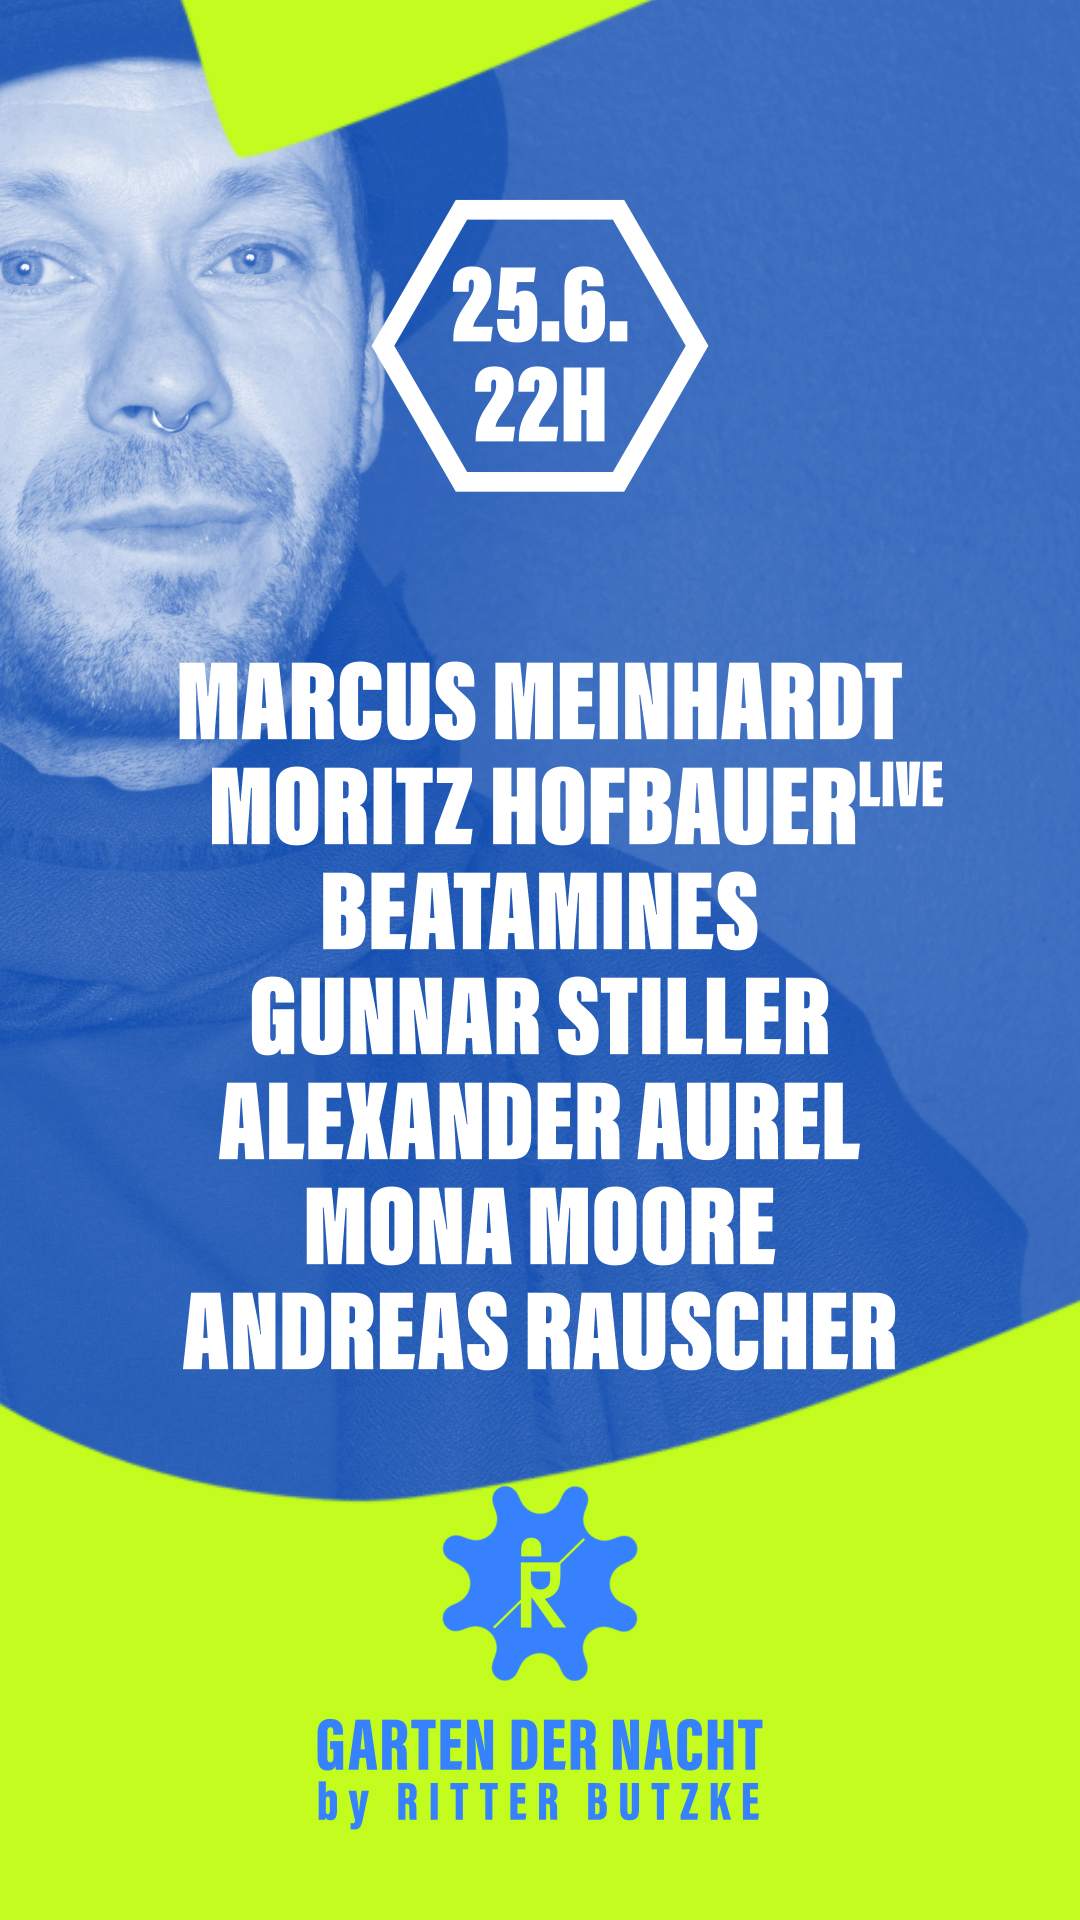 Marcus Meinhardt & Moritz Hofbauer (live) at Garten der Nacht - フライヤー裏